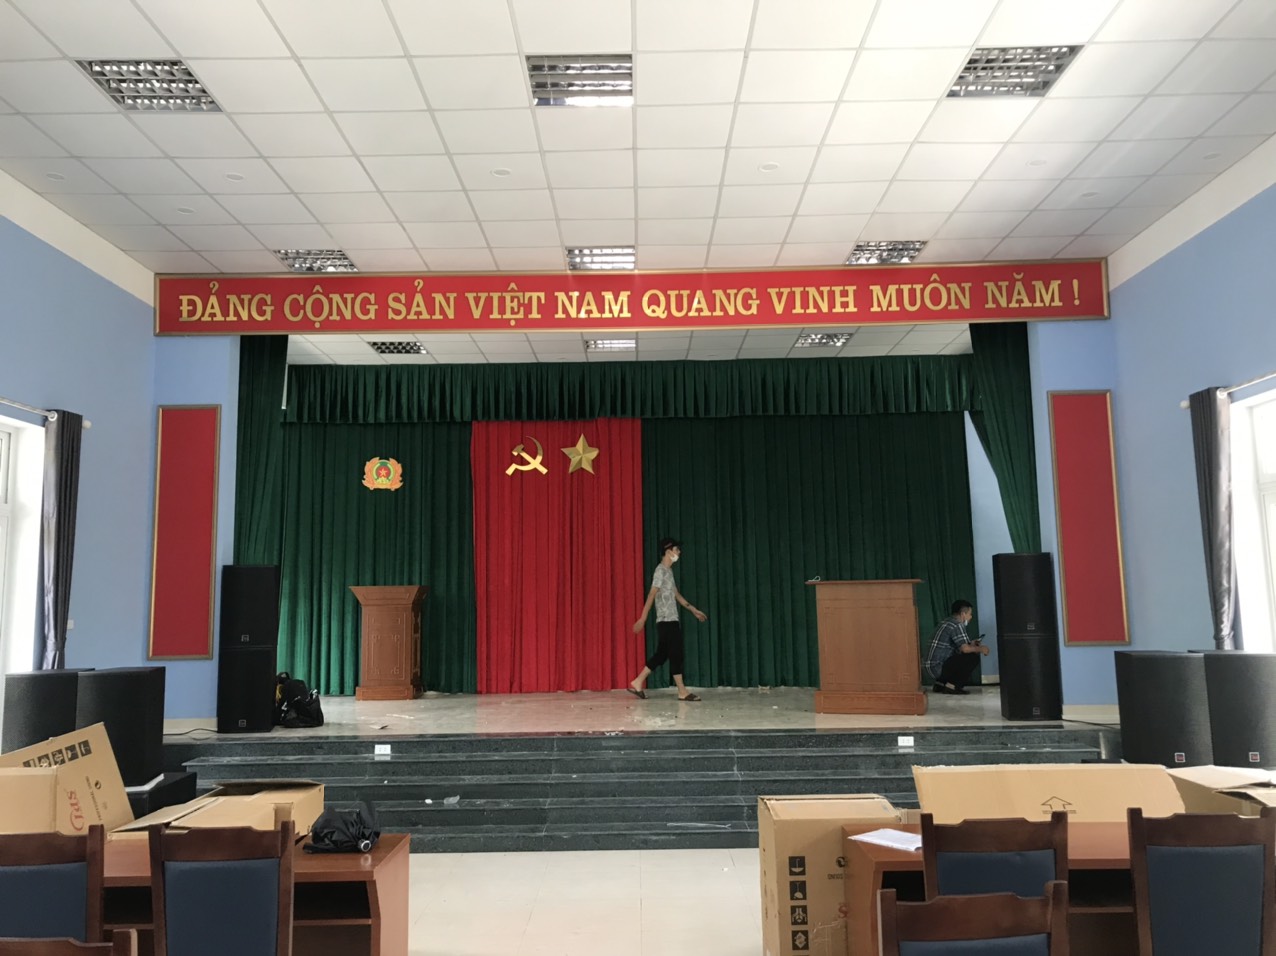 Trường Giang Audio Cung Cấp Hệ Thống Âm Thanh Hội Trường Cho Trại Giam Đồng Vải Hoành Bồ - Quảng Ninh